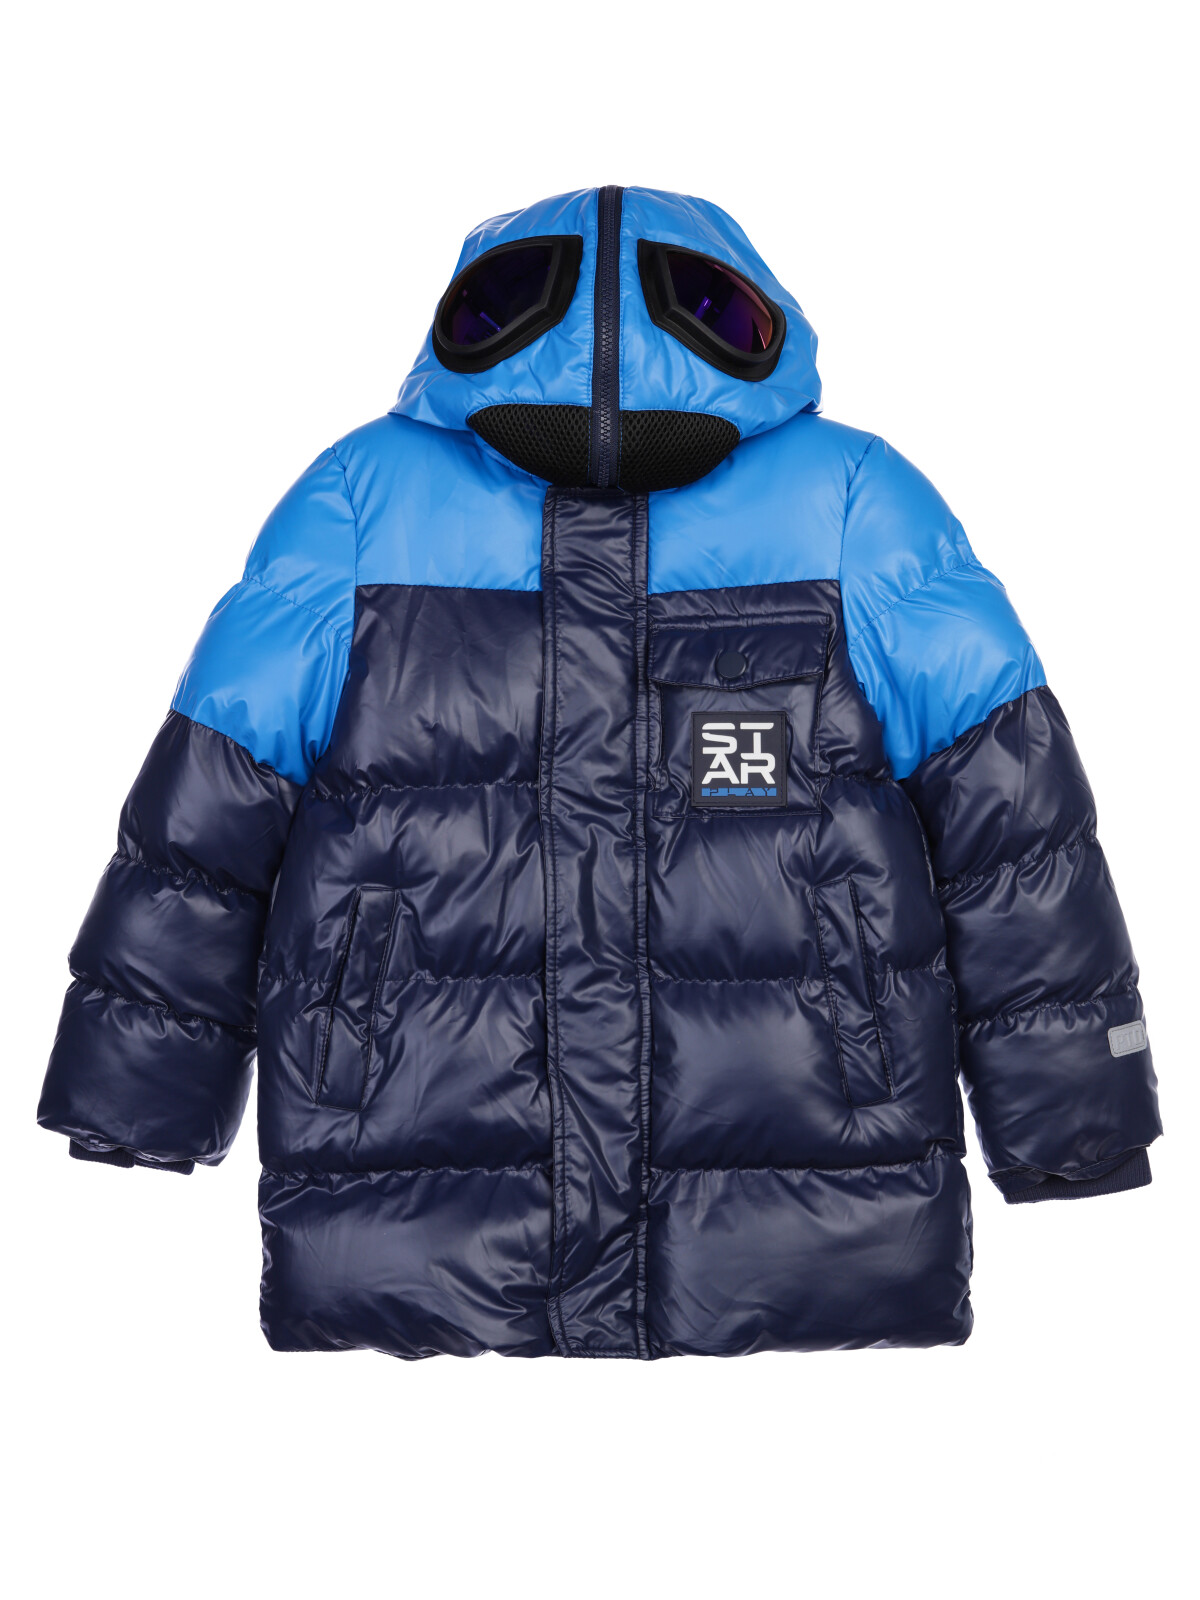 Пальто текстильное с полиуретановым покрытием для мальчиков PlayToday, синий,черный, 98